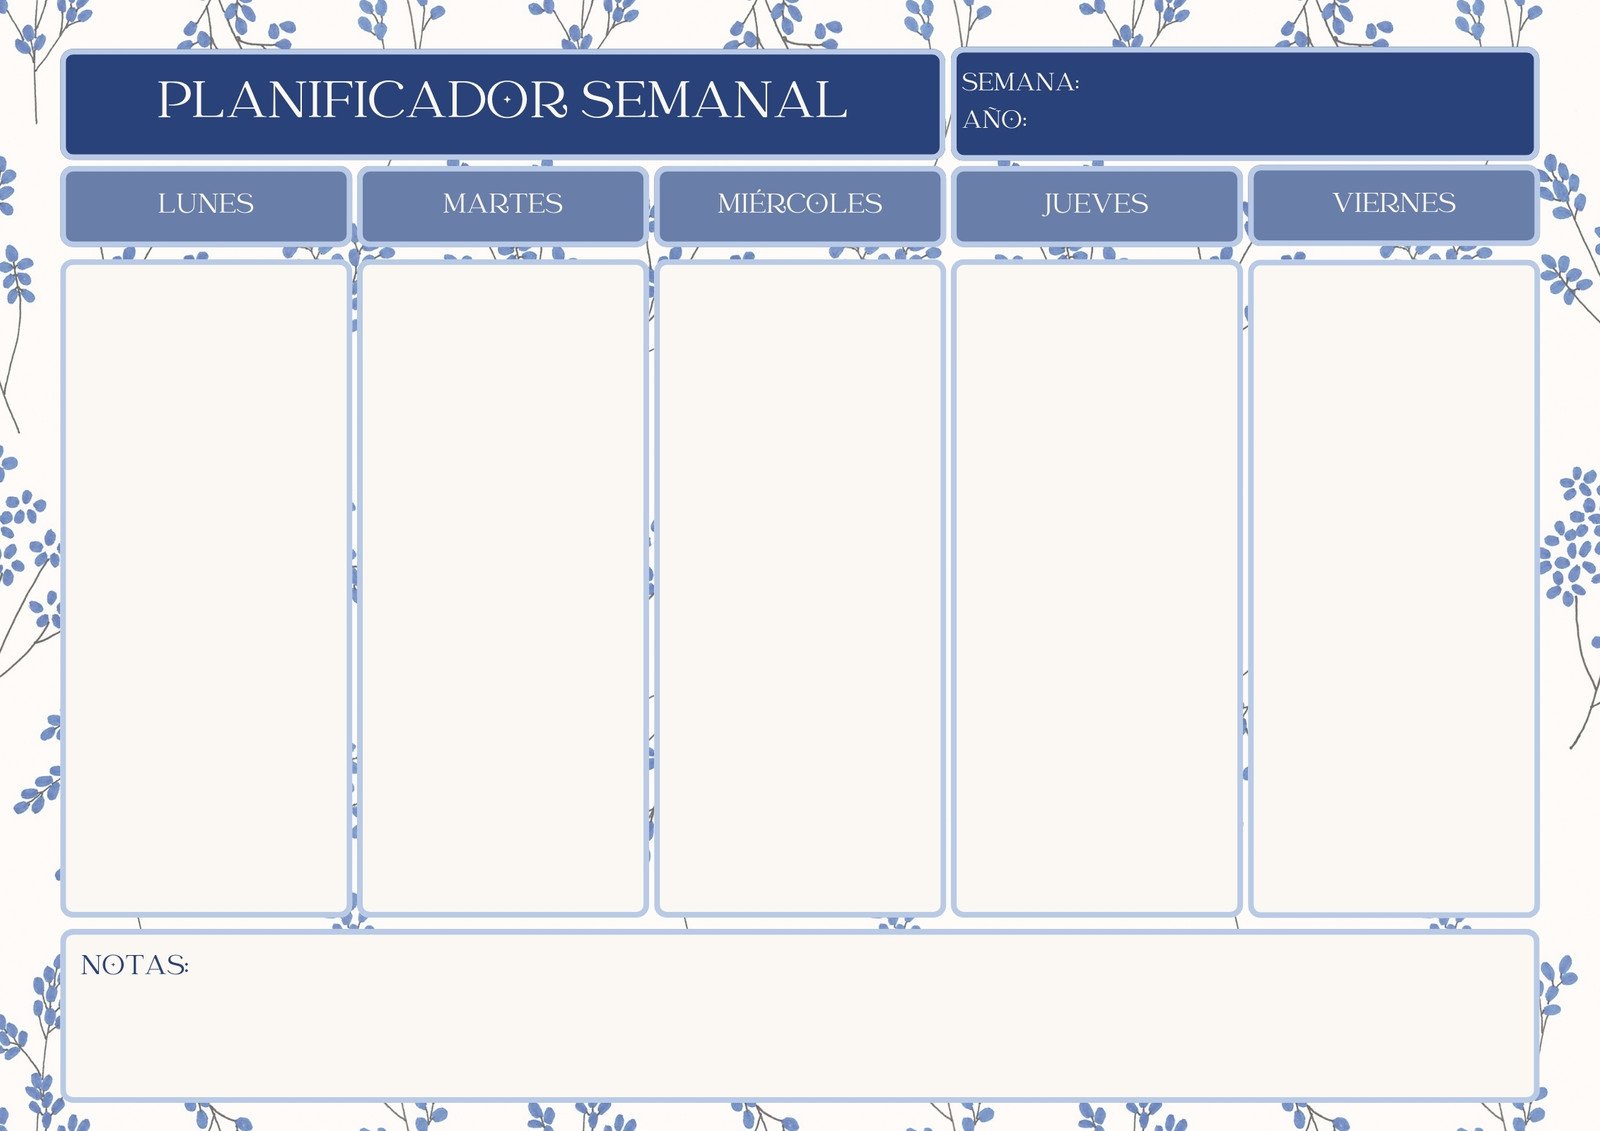 Calendario De La Semana Plantillas de calendarios semanales editables | Canva